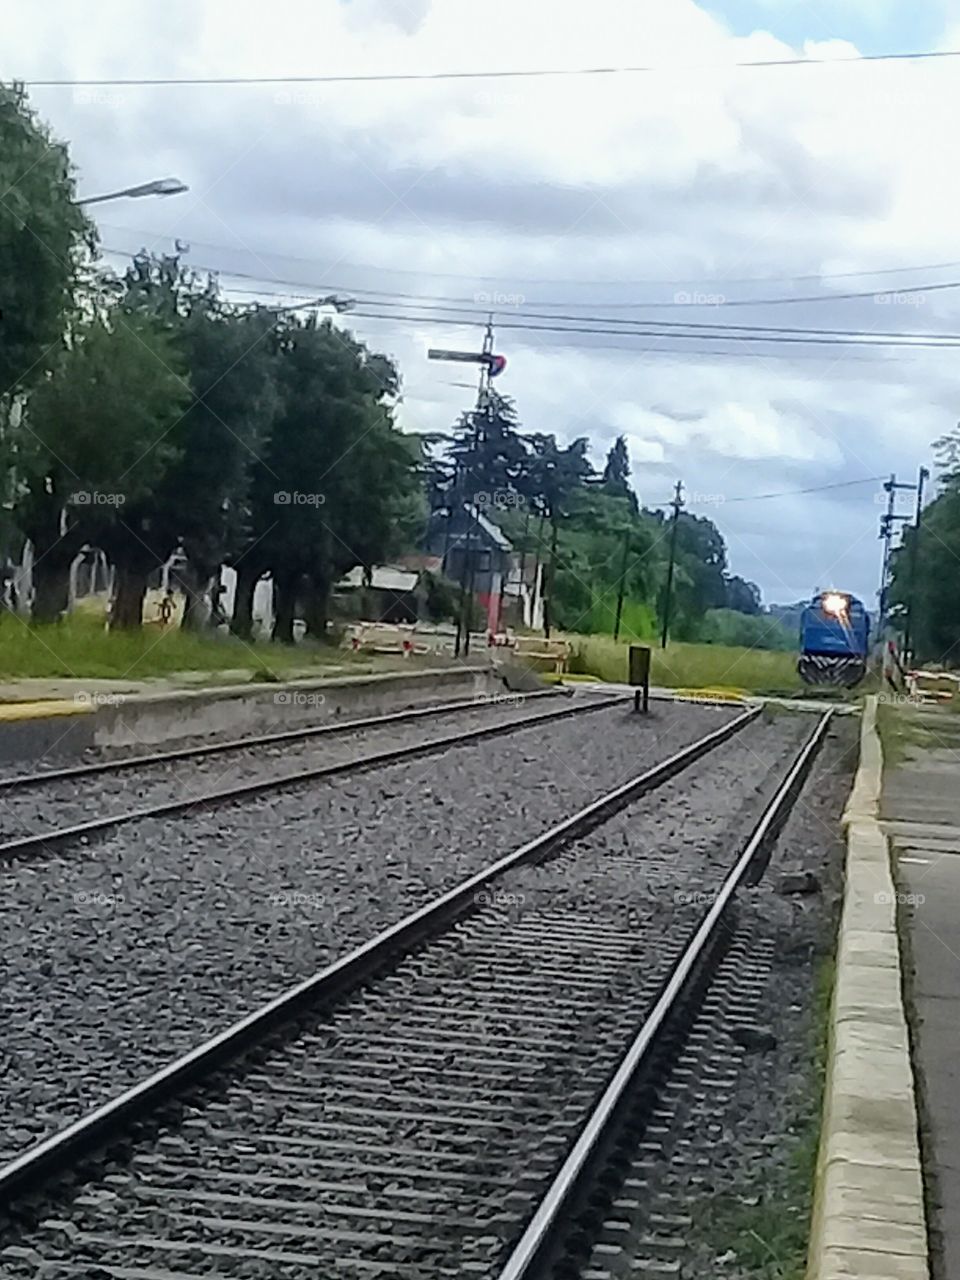 tren arribando a la estación de un pueblo rural.